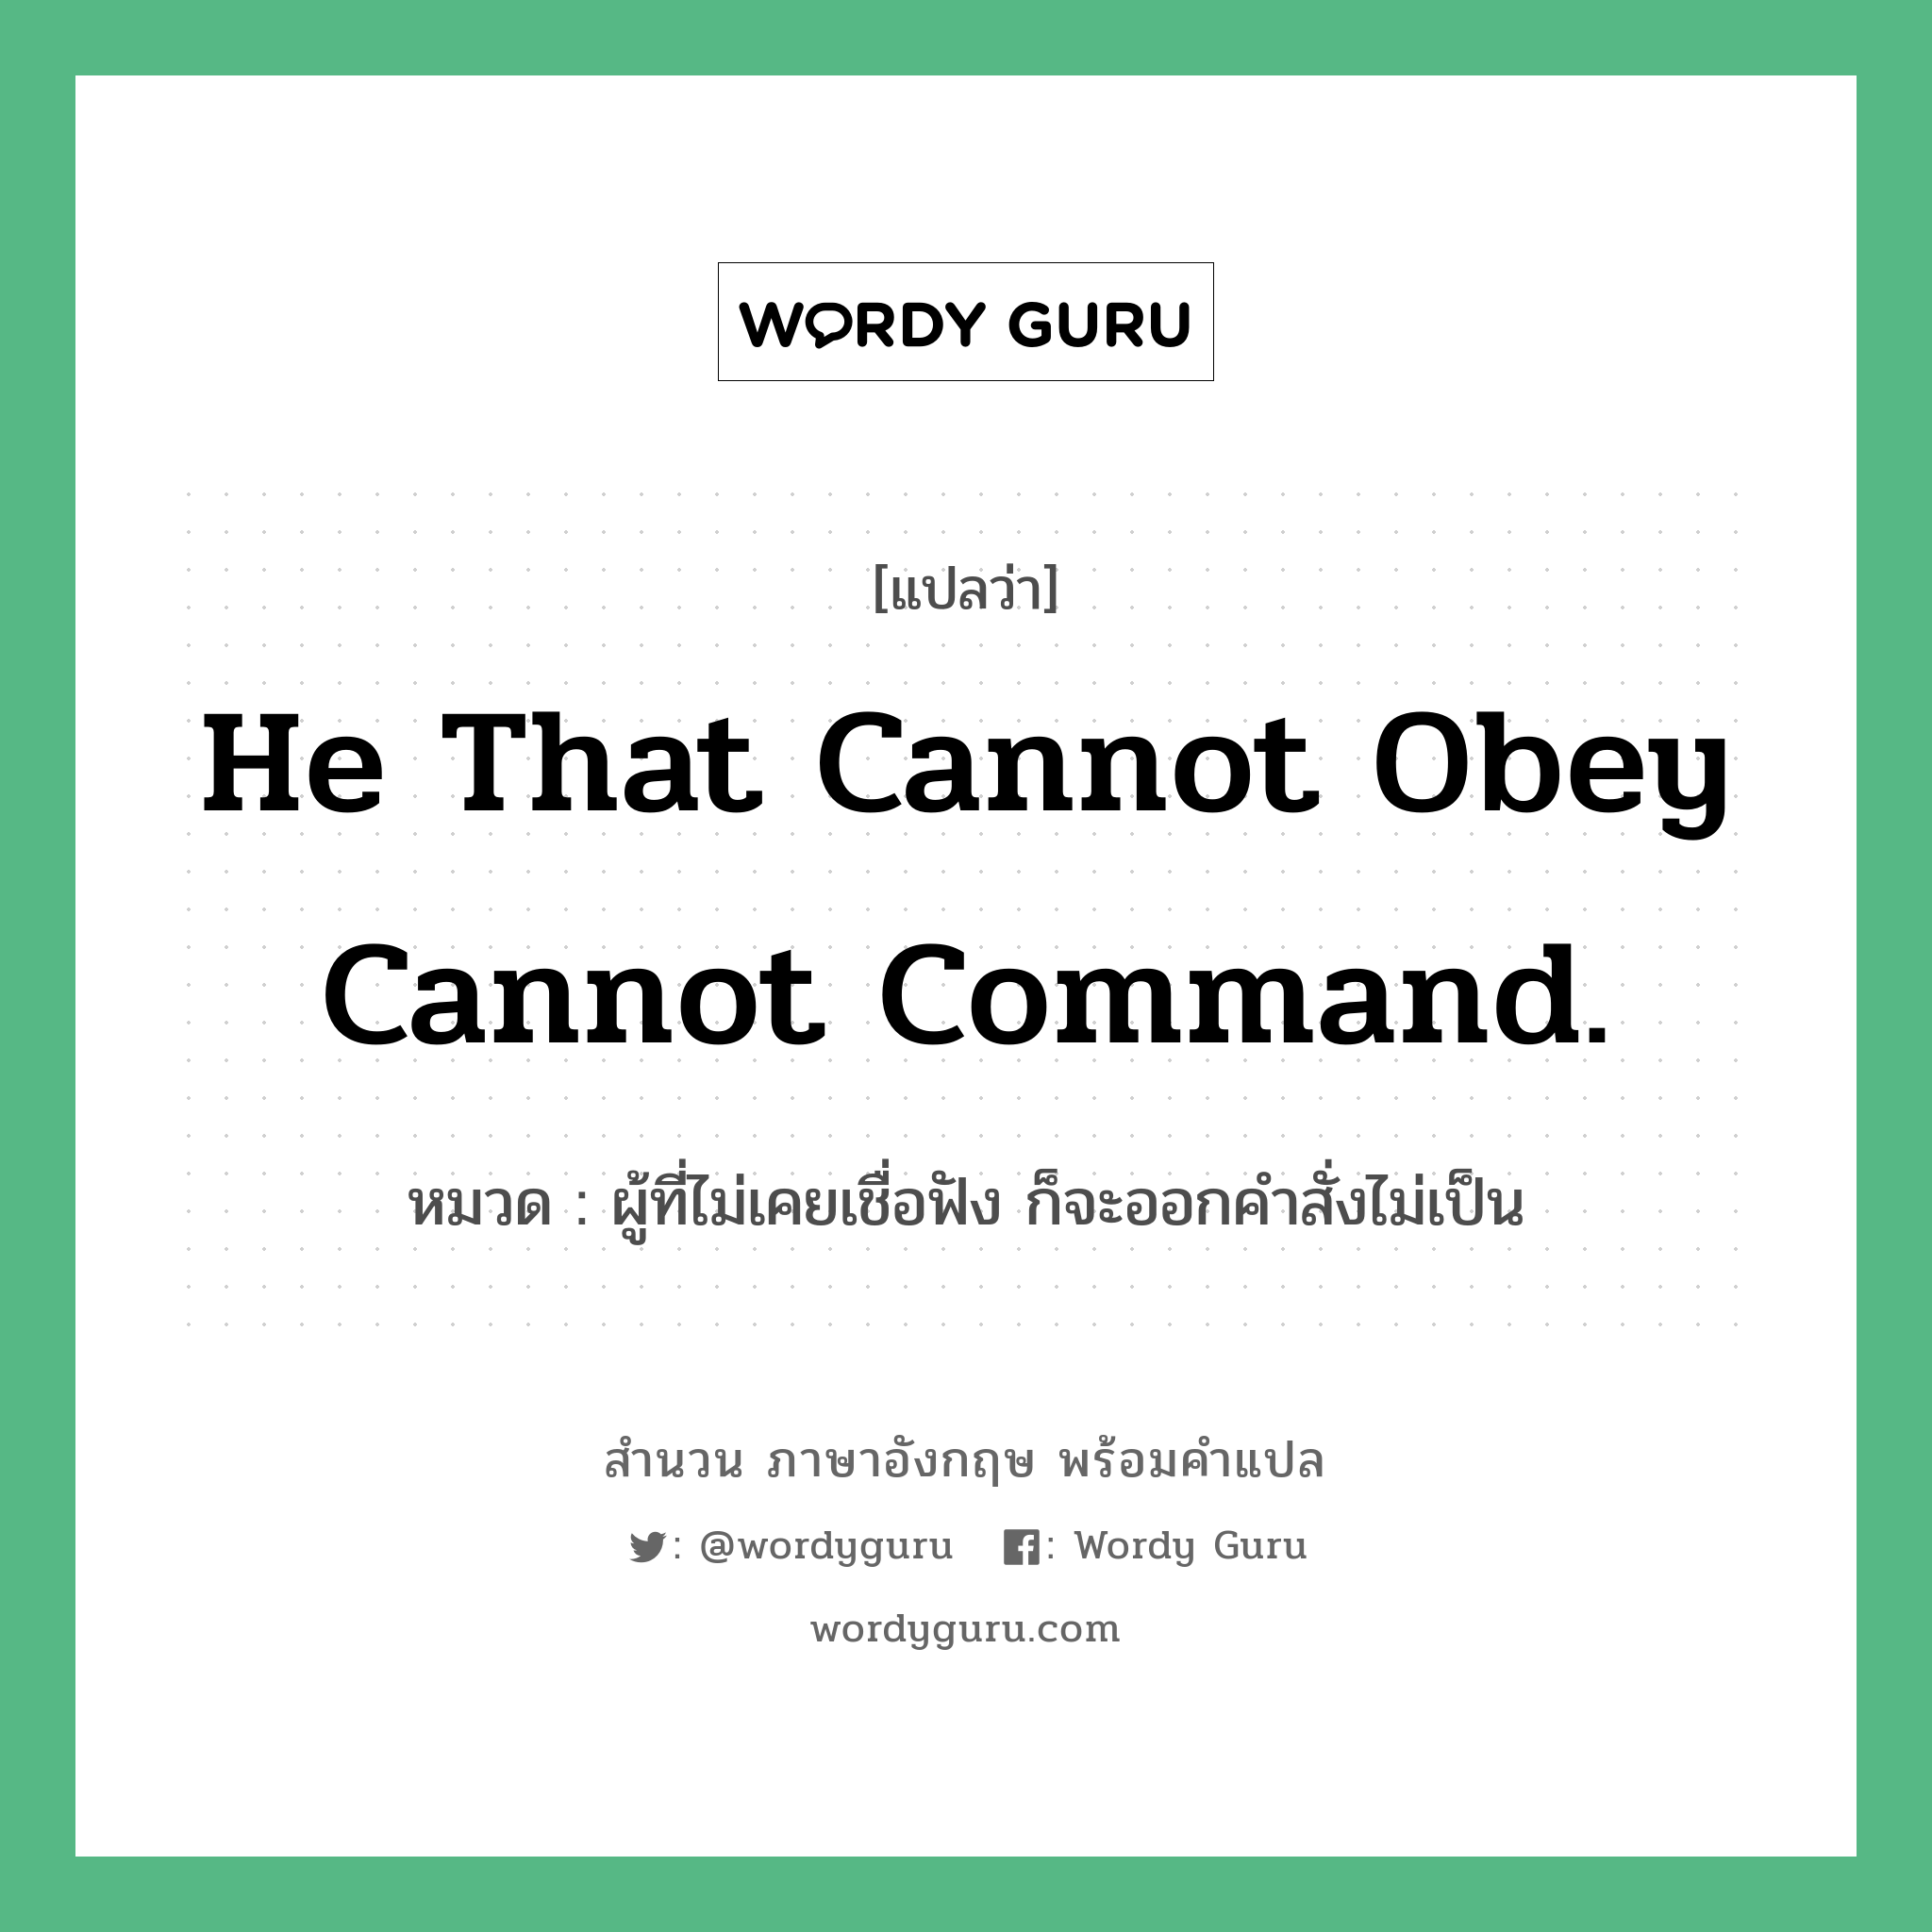 ผู้ที่ไม่เคยเชื่อฟัง ก็จะออกคำสั่งไม่เป็น ภาษาอังกฤษ?, สำนวนภาษาอังกฤษ ผู้ที่ไม่เคยเชื่อฟัง ก็จะออกคำสั่งไม่เป็น แปลว่า ผู้ที่ไม่เคยเชื่อฟัง ก็จะออกคำสั่งไม่เป็น หมวด He that cannot obey cannot command. คำสุภาษิต ภาษาอังกฤษ หมวด คำสุภาษิต ภาษาอังกฤษ